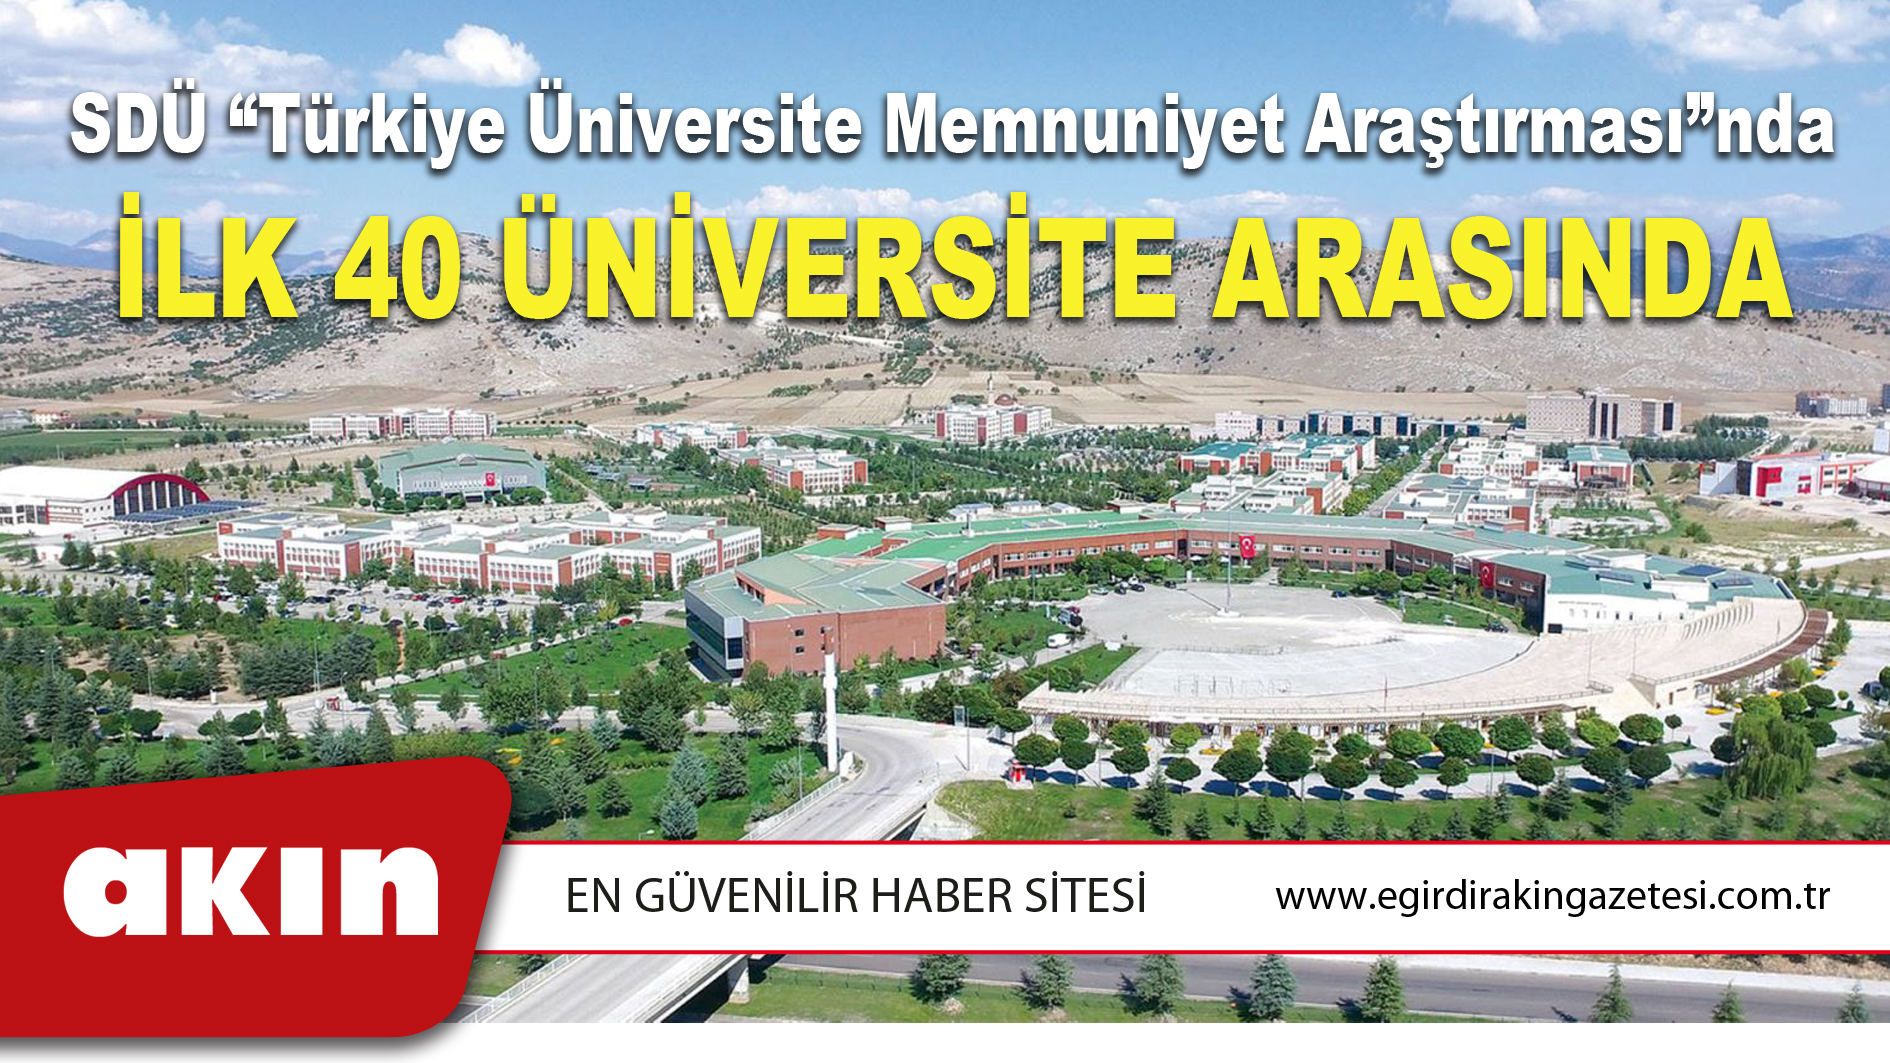 SDÜ “Türkiye Üniversite Memnuniyet Araştırması”nda İlk 40 Üniversite Arasında